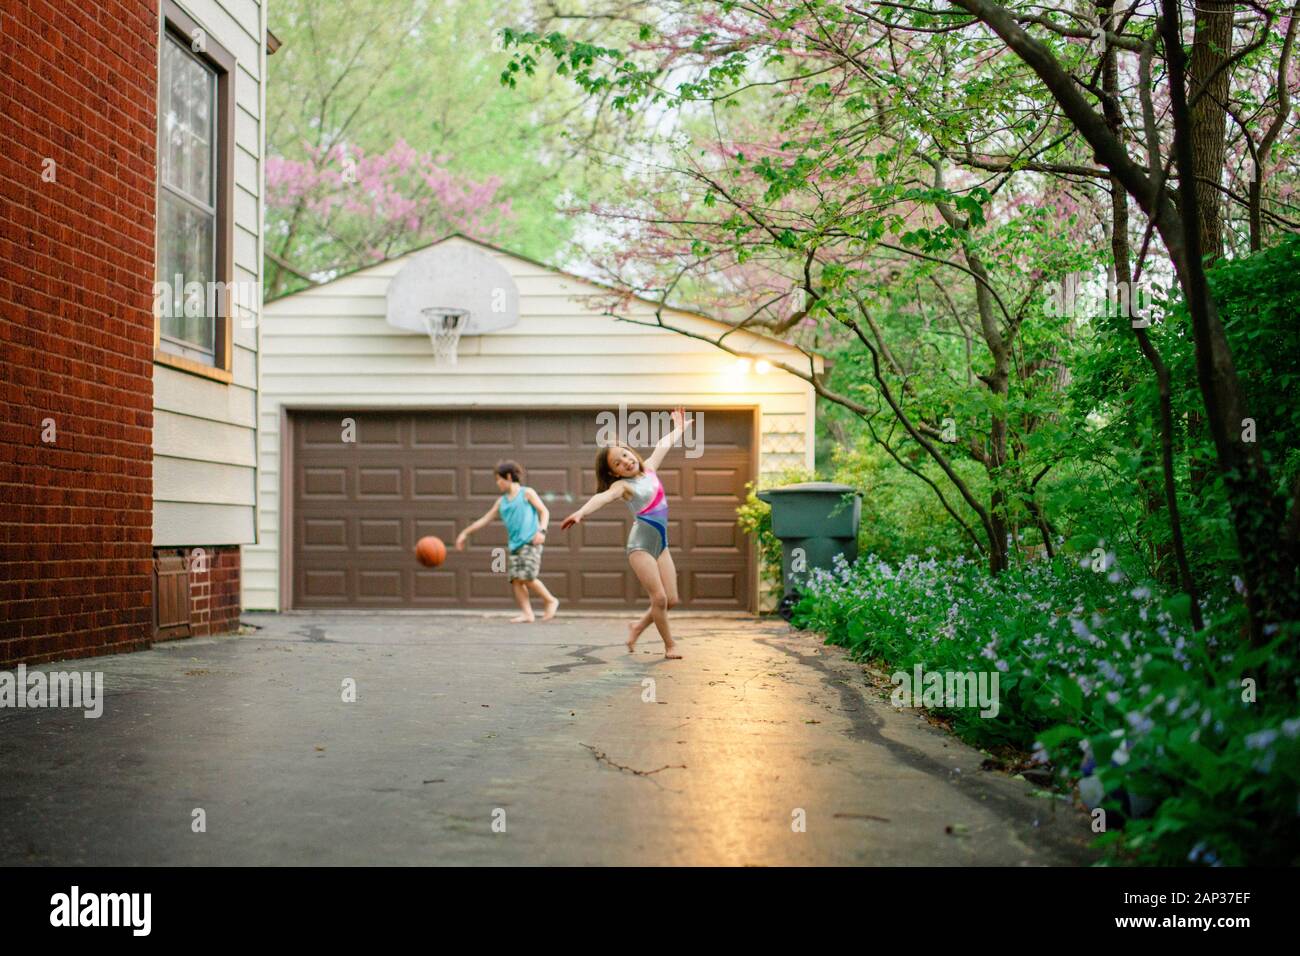 Una bambina balla a piedi nudi mentre il fratello gioca a basket sul retro Foto Stock